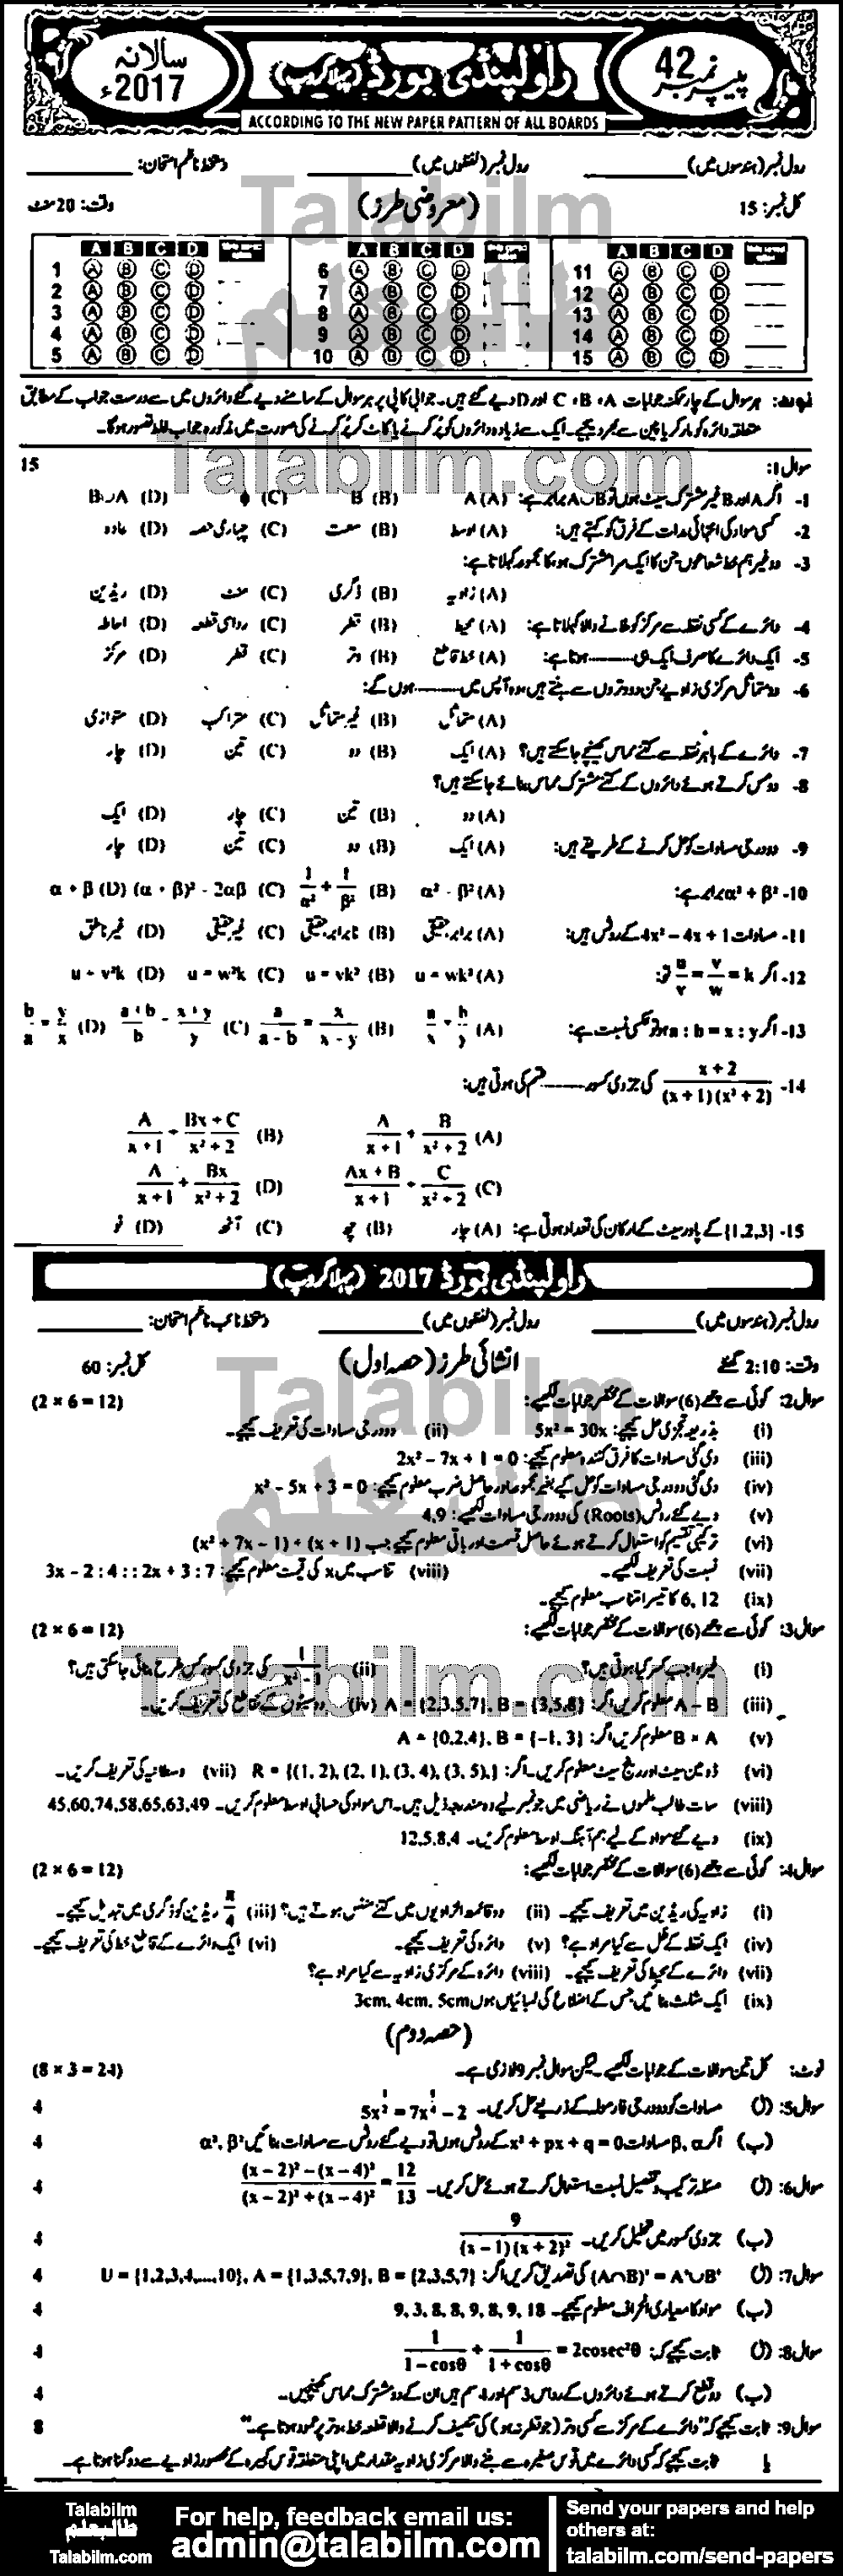 Math 0 past paper for Urdu Medium 2017 Group-I